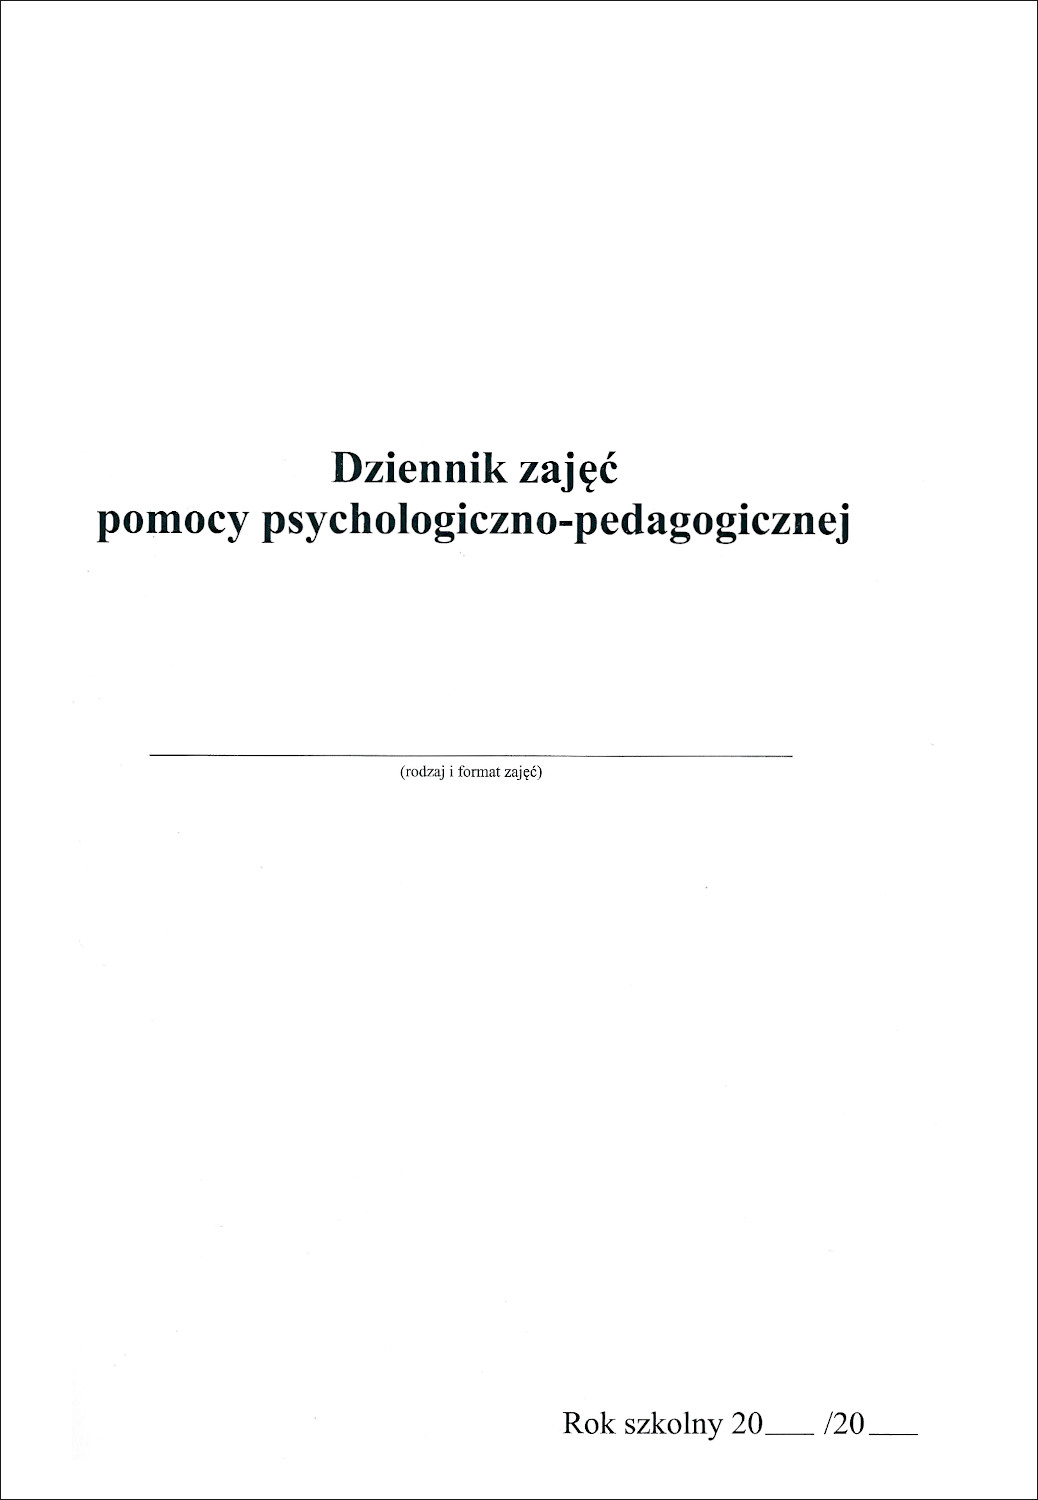 Dziennik zajęć pomocy psycholog.-pedagogicznej A4 (108 str.)